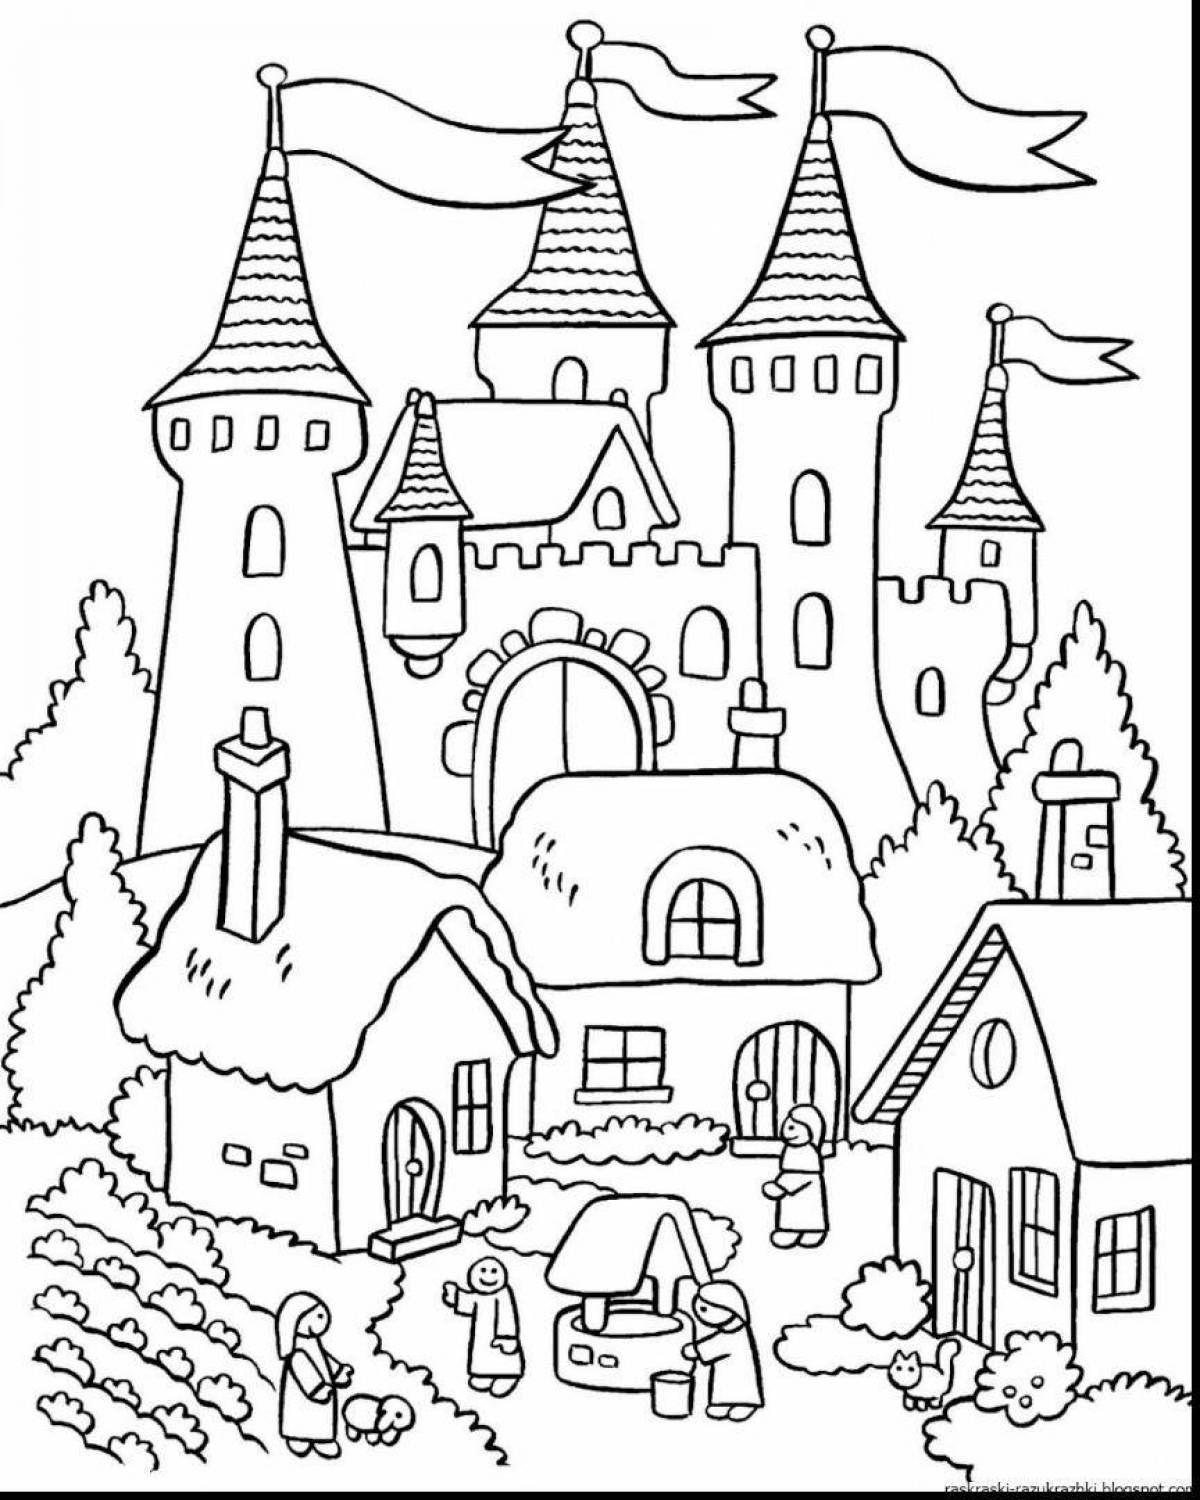 Великолепная раскраска замок для детей 4-5 лет